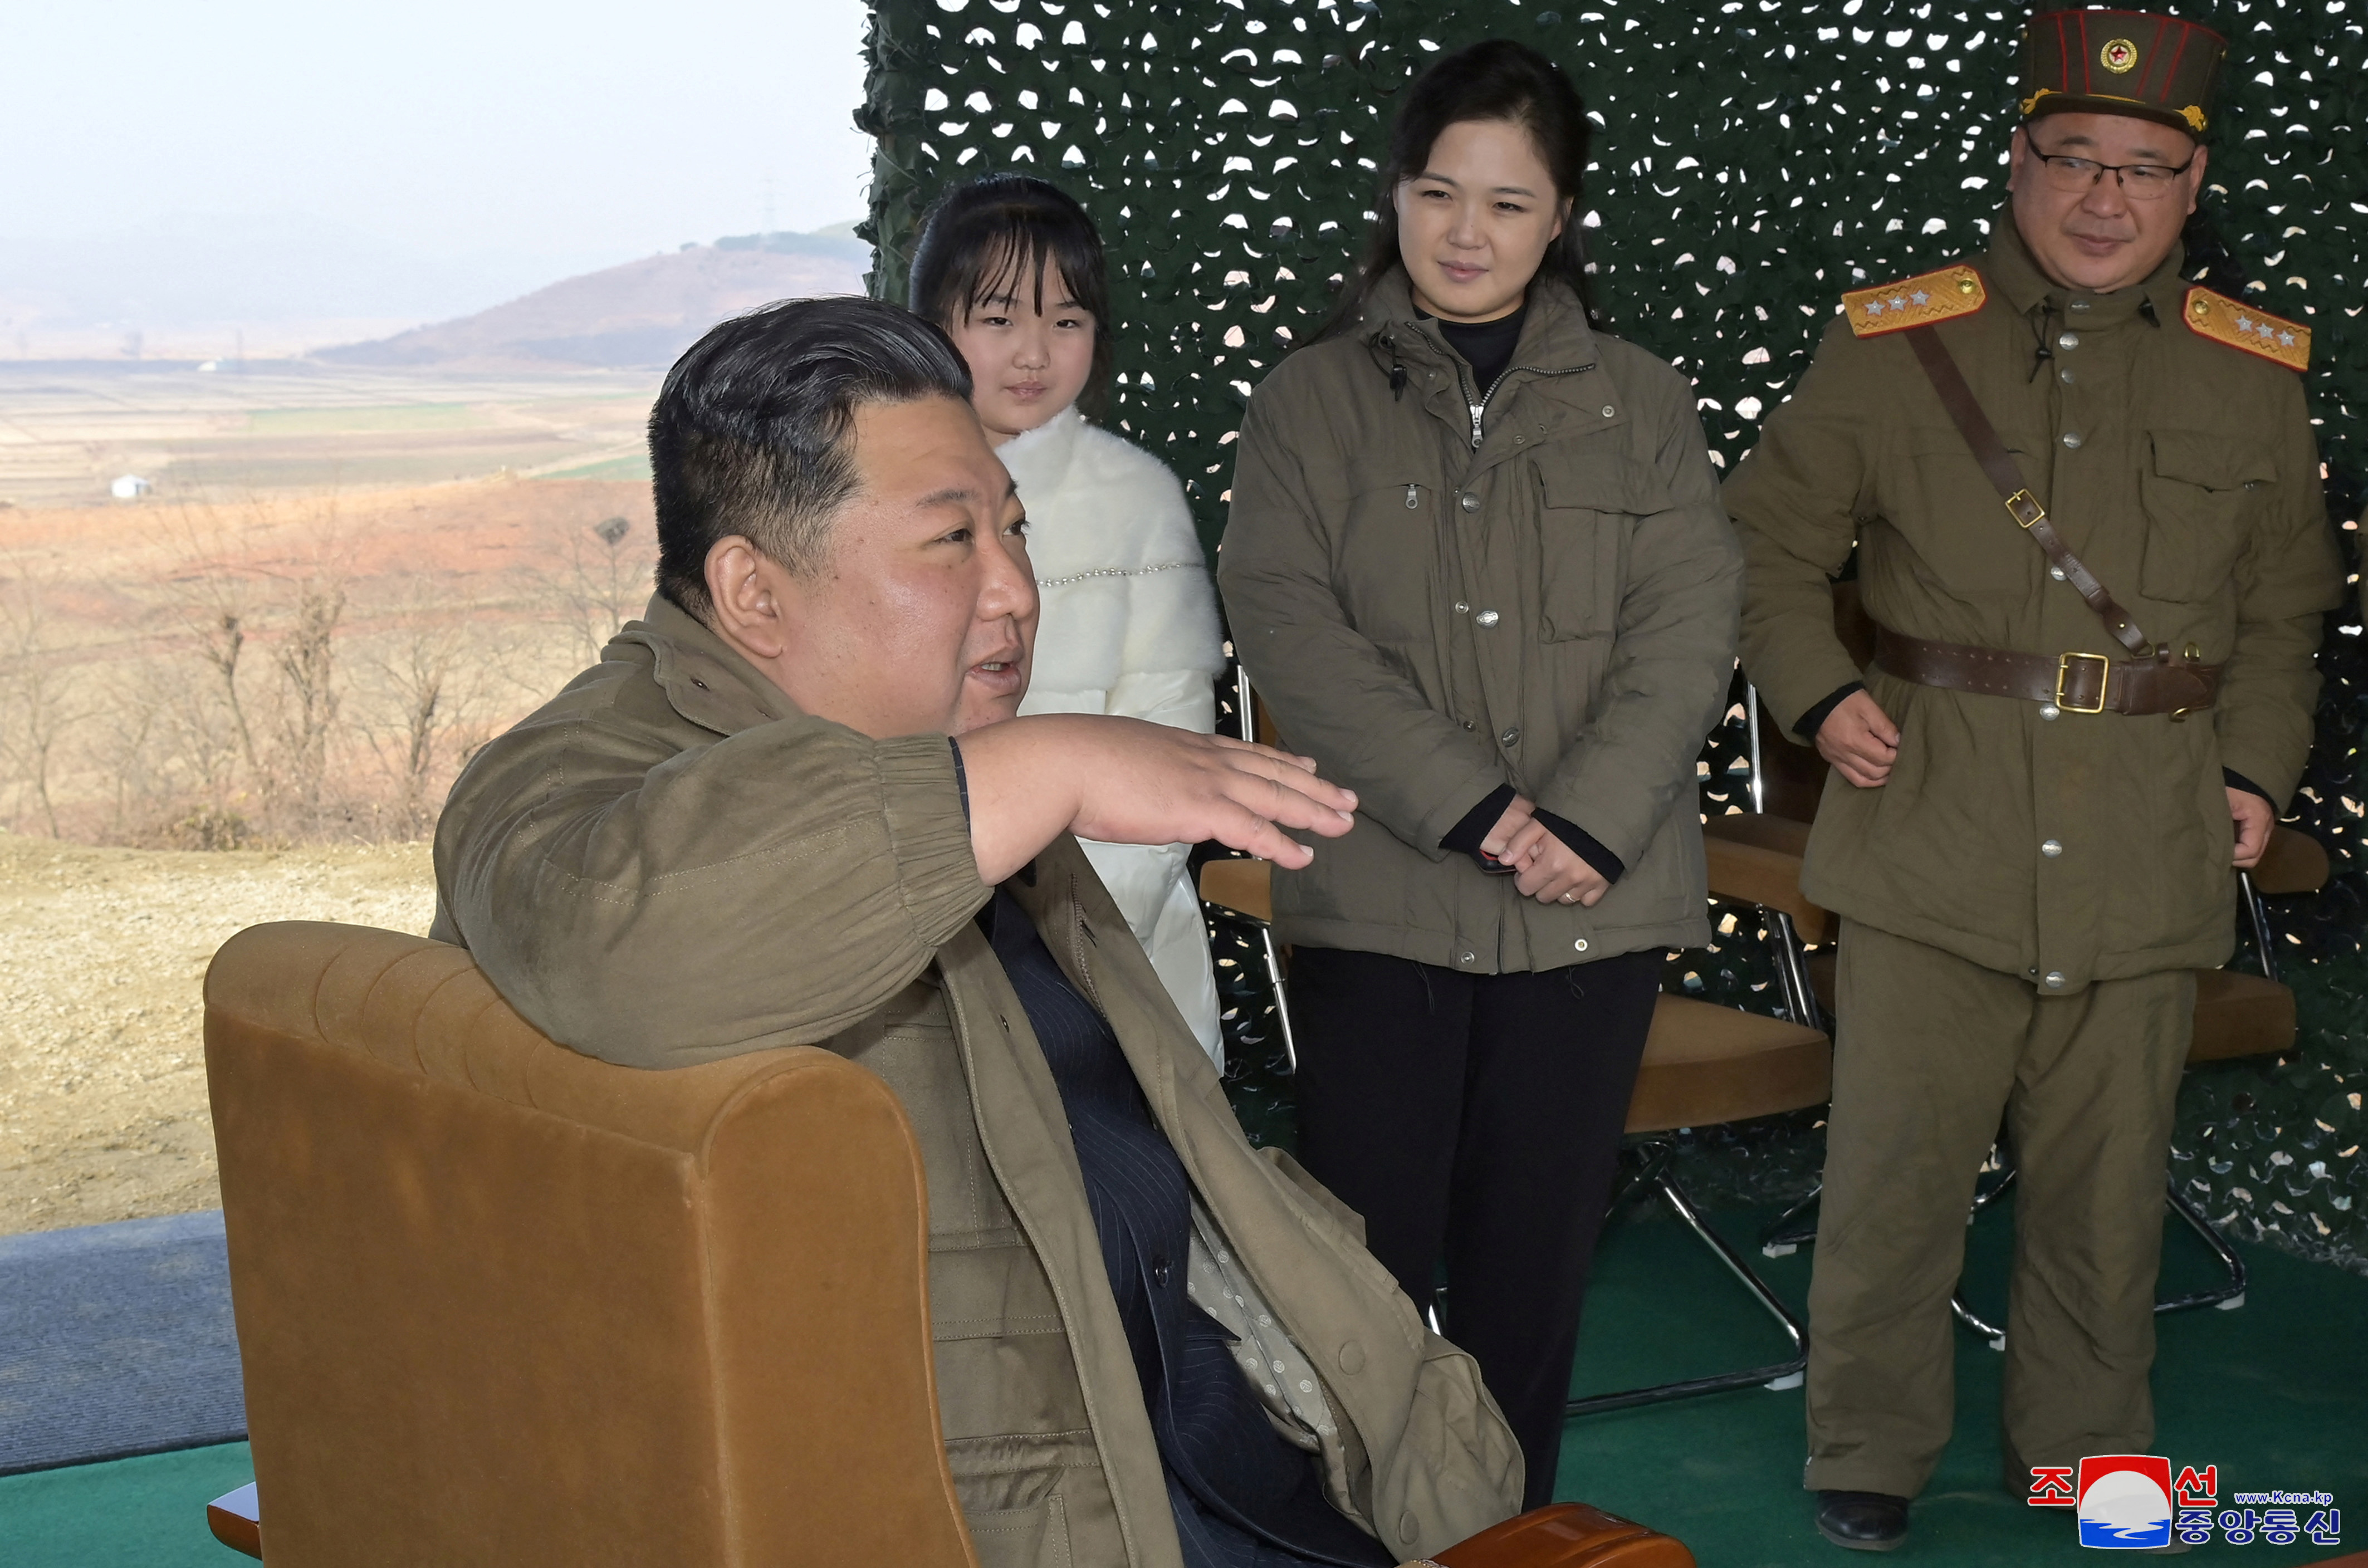 Βόρεια Κορέα: Ο Κιμ Γιονγκ Ουν παρουσίασε για πρώτη φορά την κόρη του και απείλησε με ατομική βόμβα-2